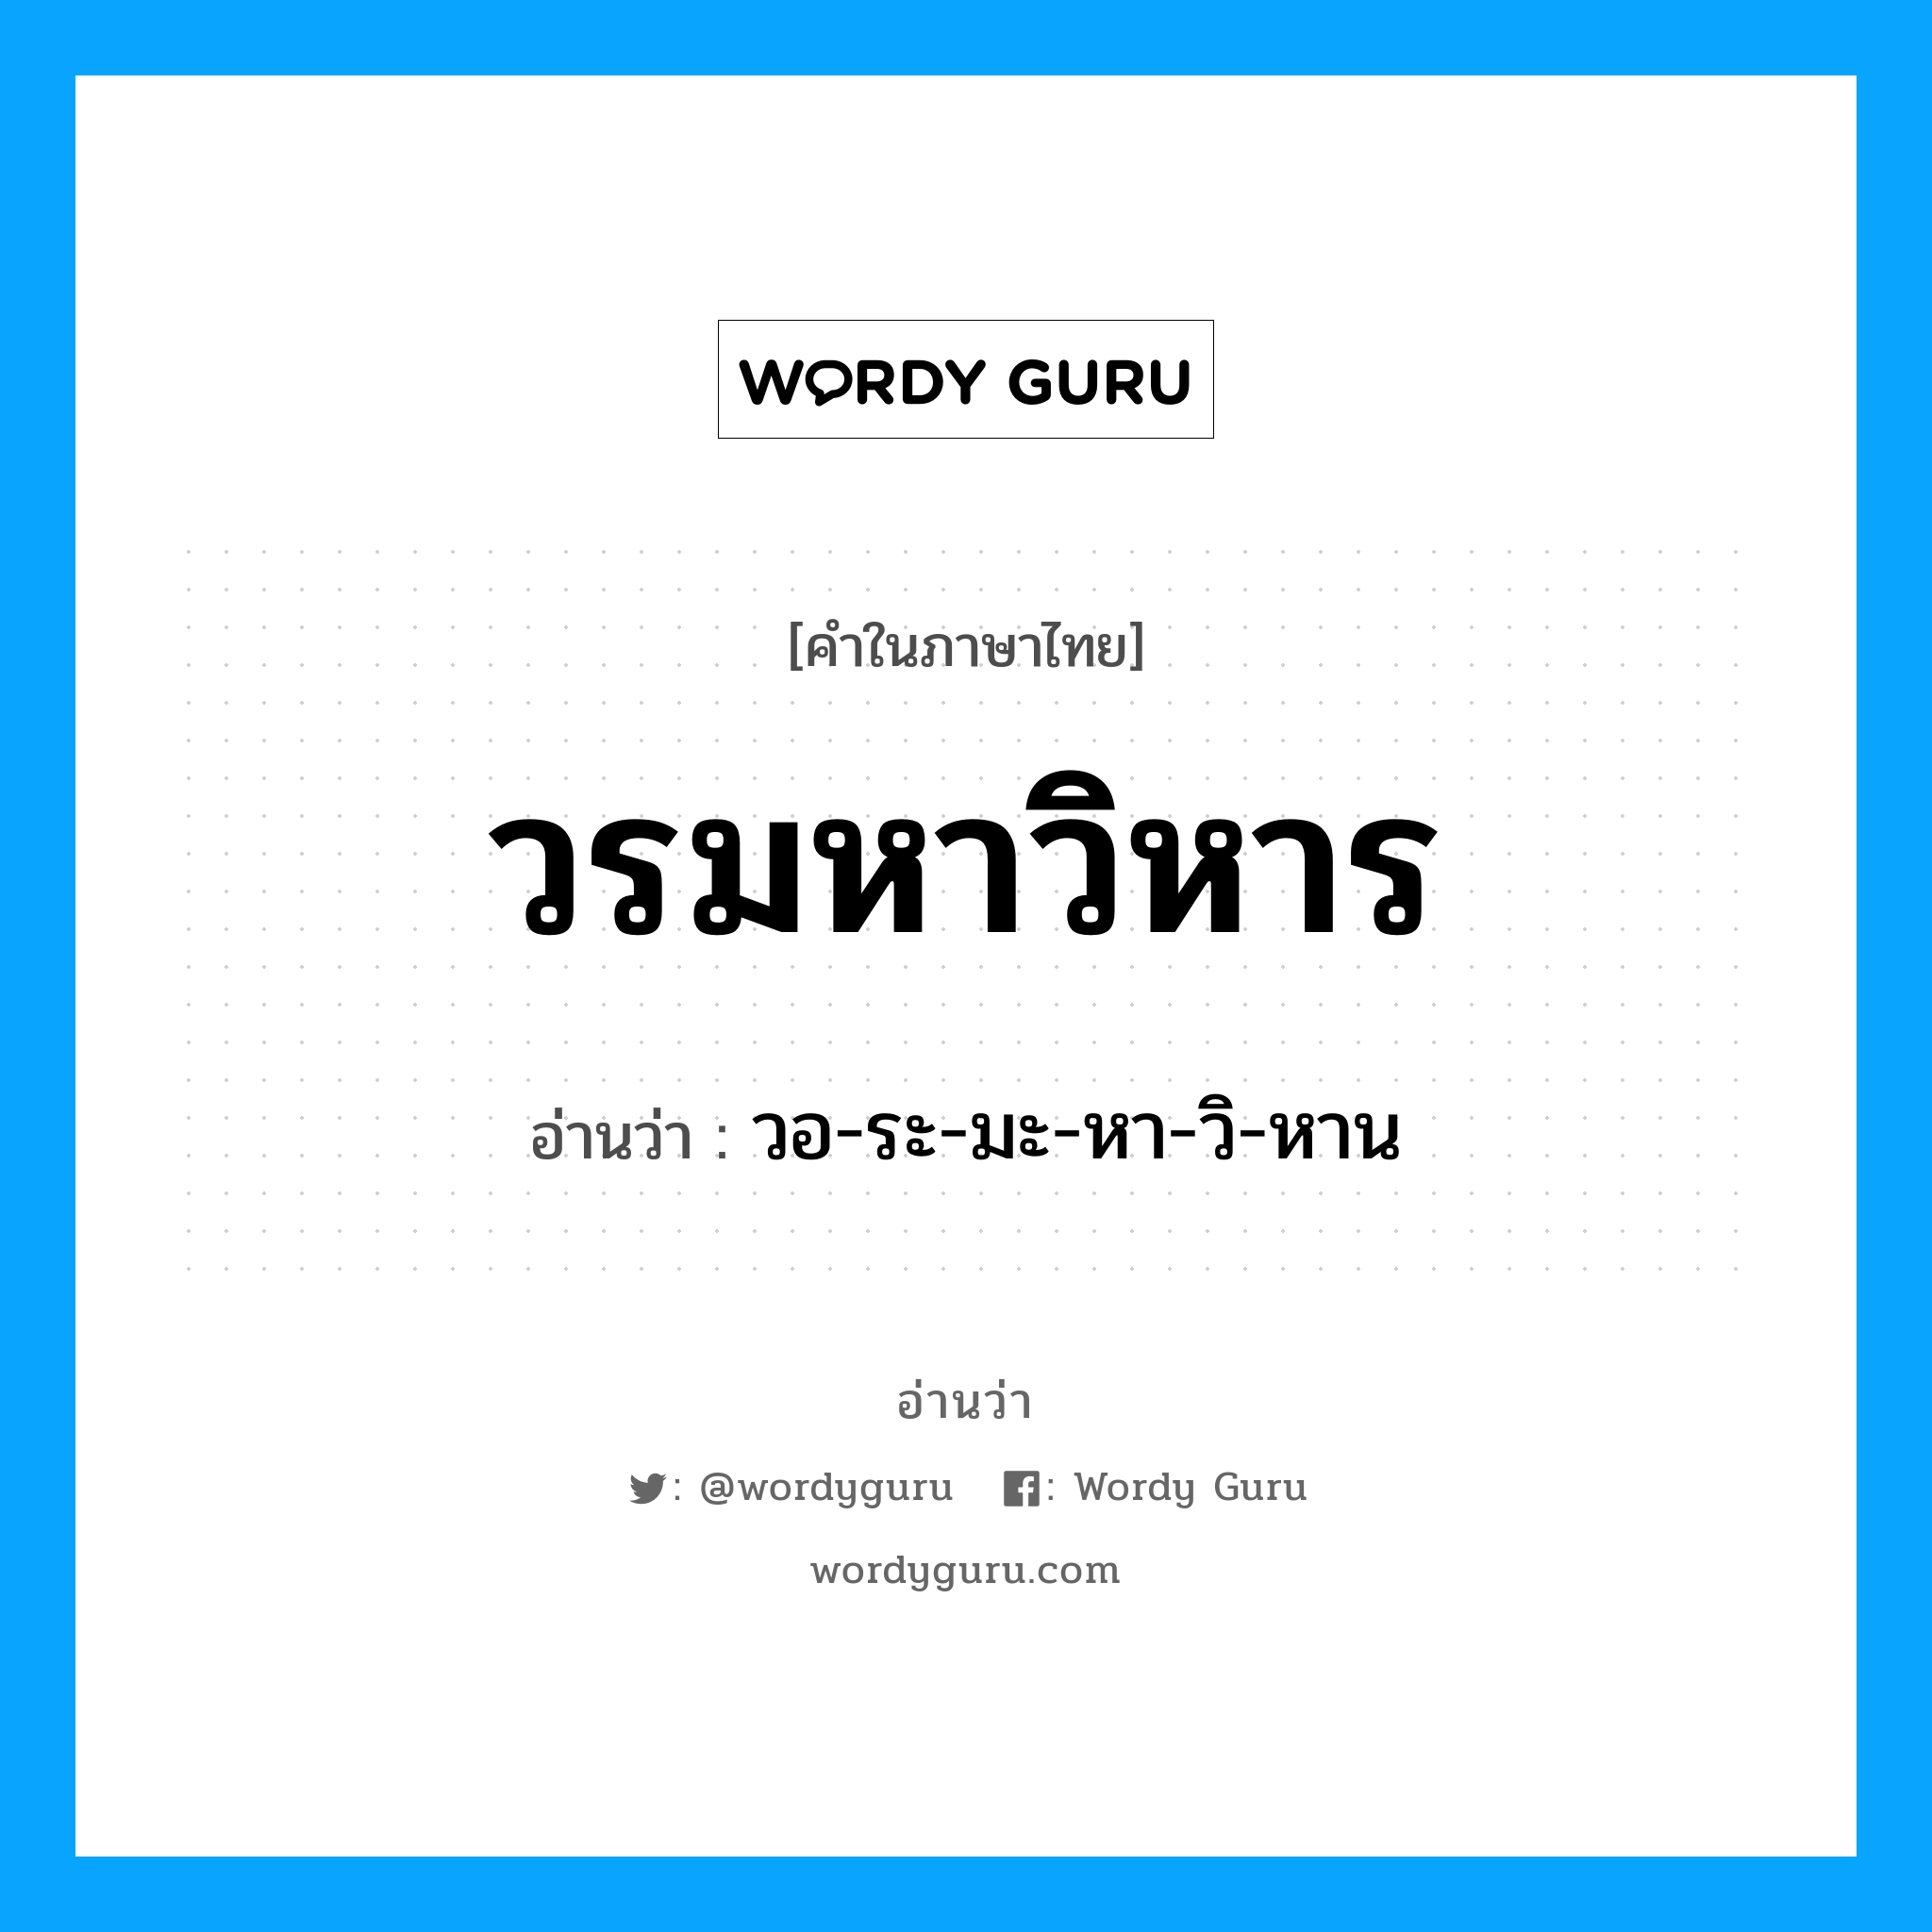 วอ-ระ-มะ-หา-วิ-หาน เป็นคำอ่านของคำไหน?, คำในภาษาไทย วอ-ระ-มะ-หา-วิ-หาน อ่านว่า วรมหาวิหาร